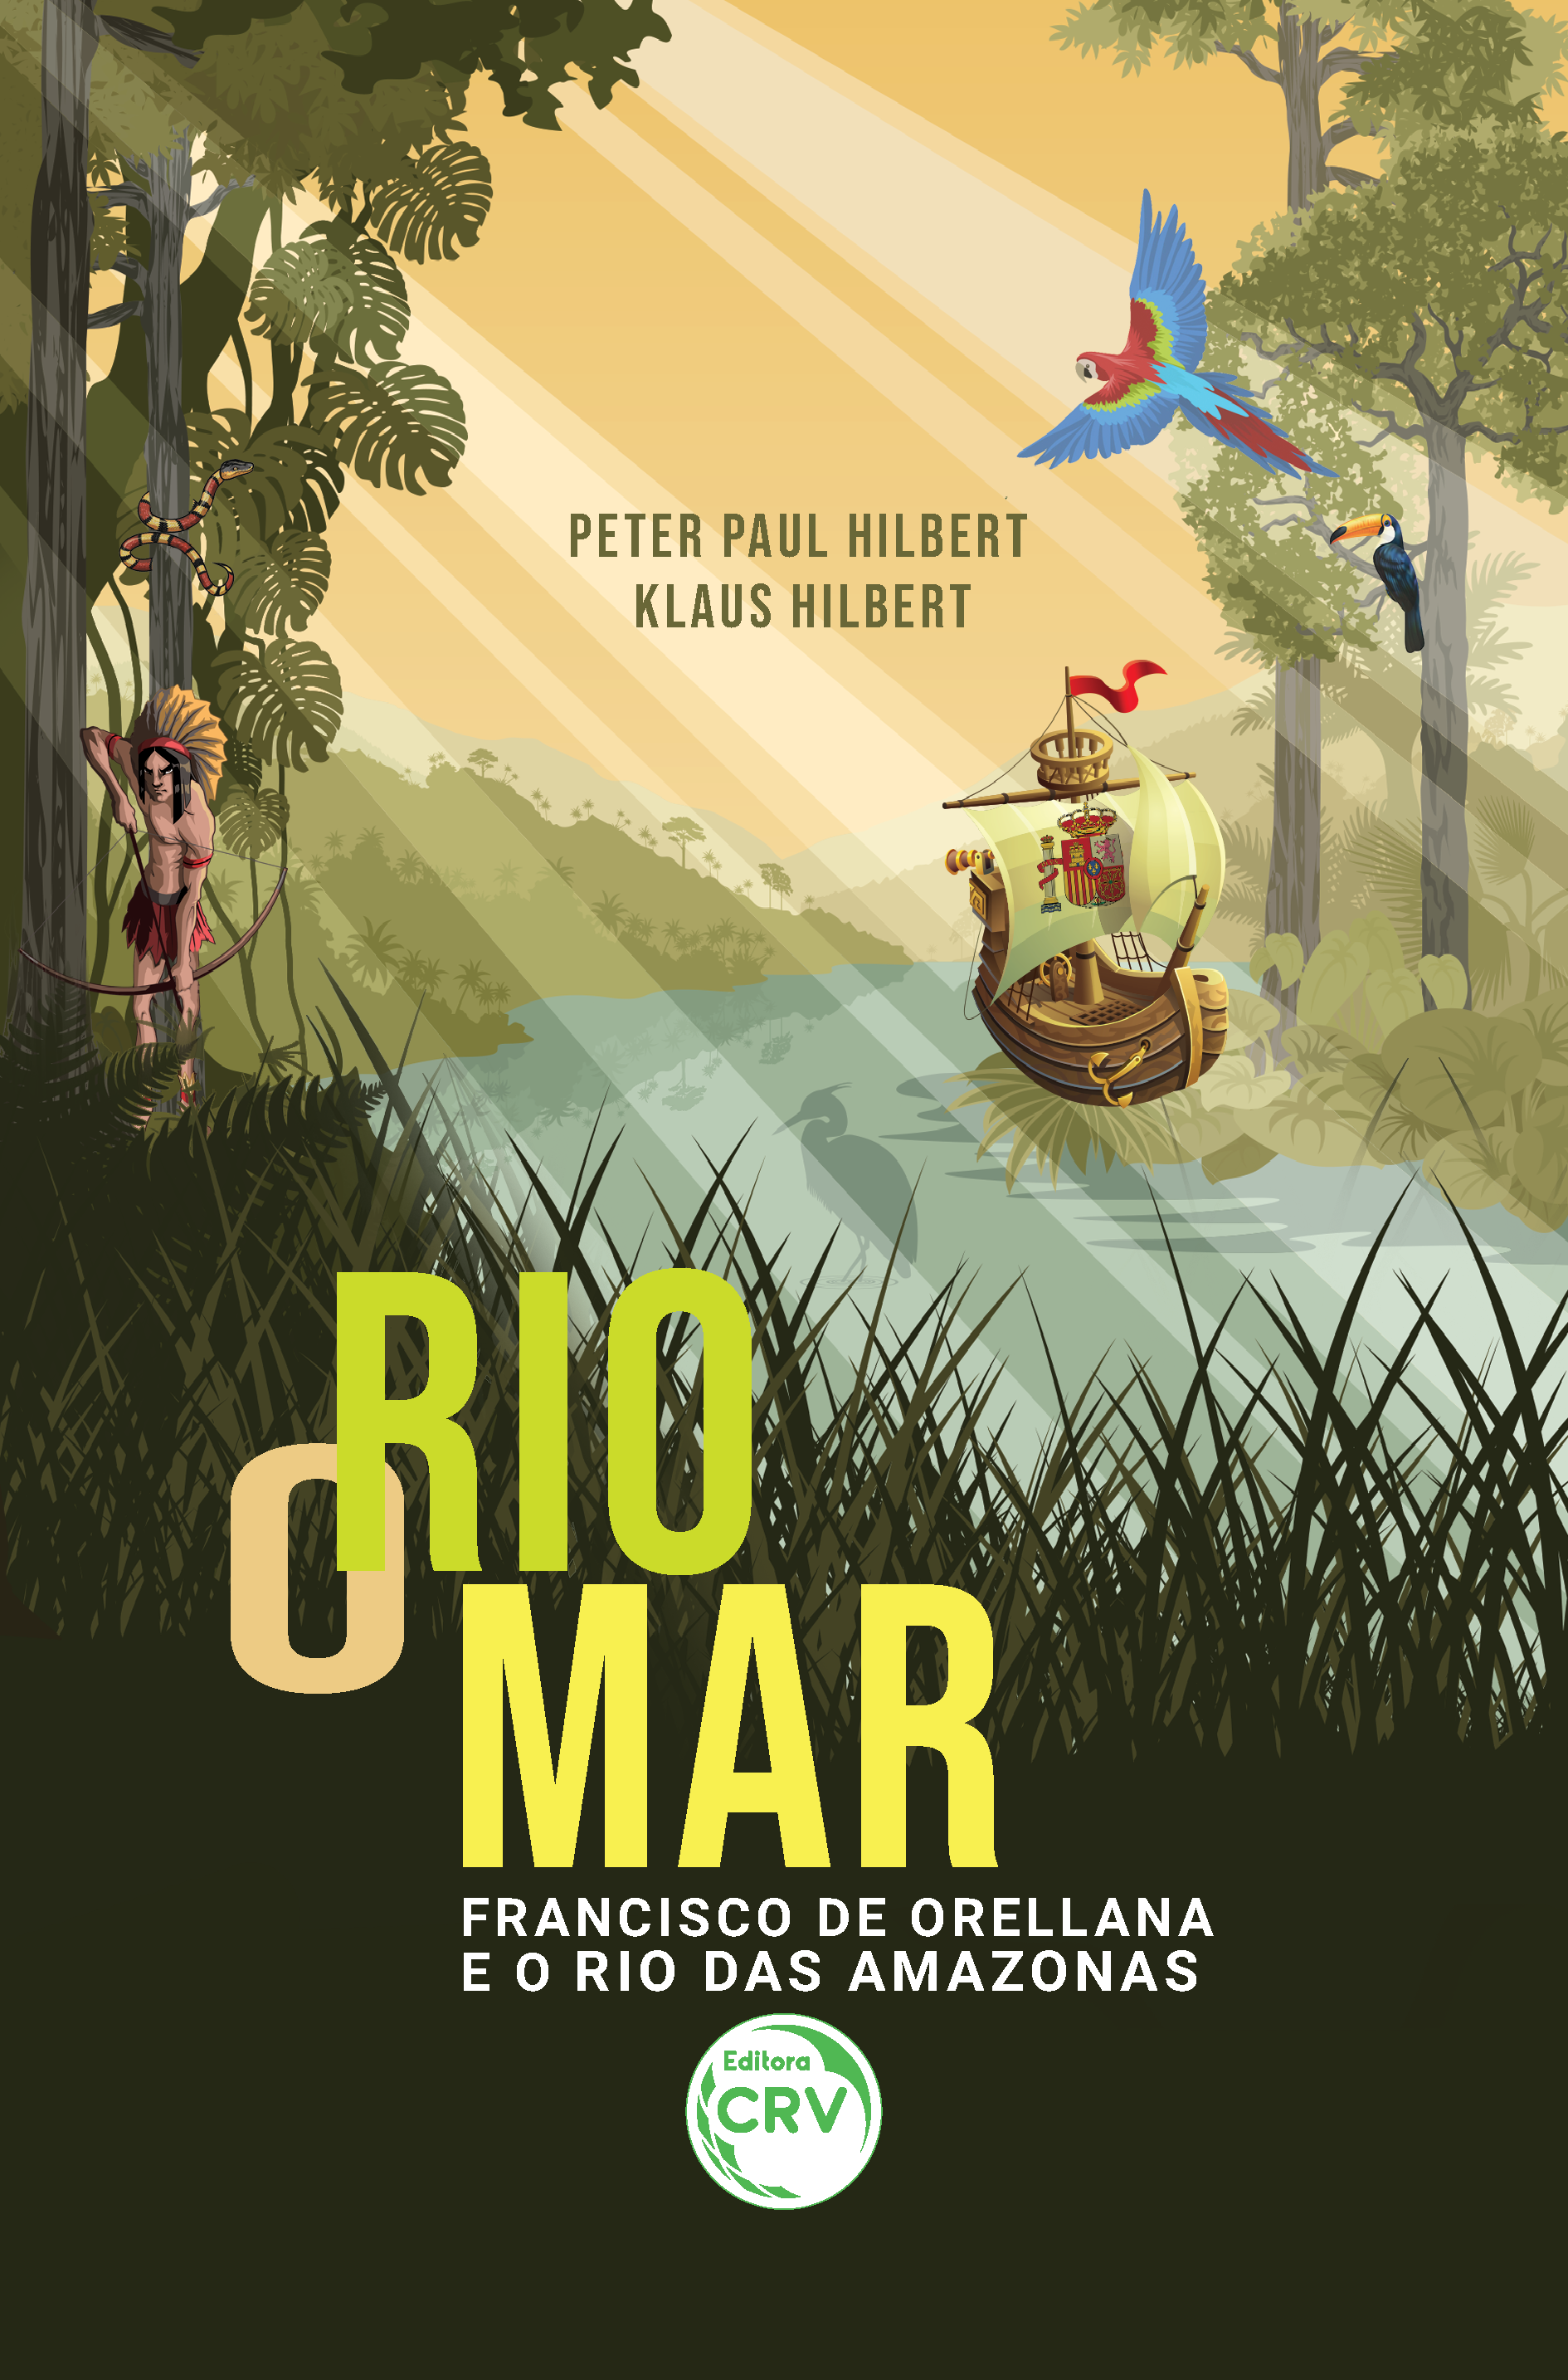 Capa do livro: O RIO MAR: <br>Francisco de Orellana e o Rio das Amazonas